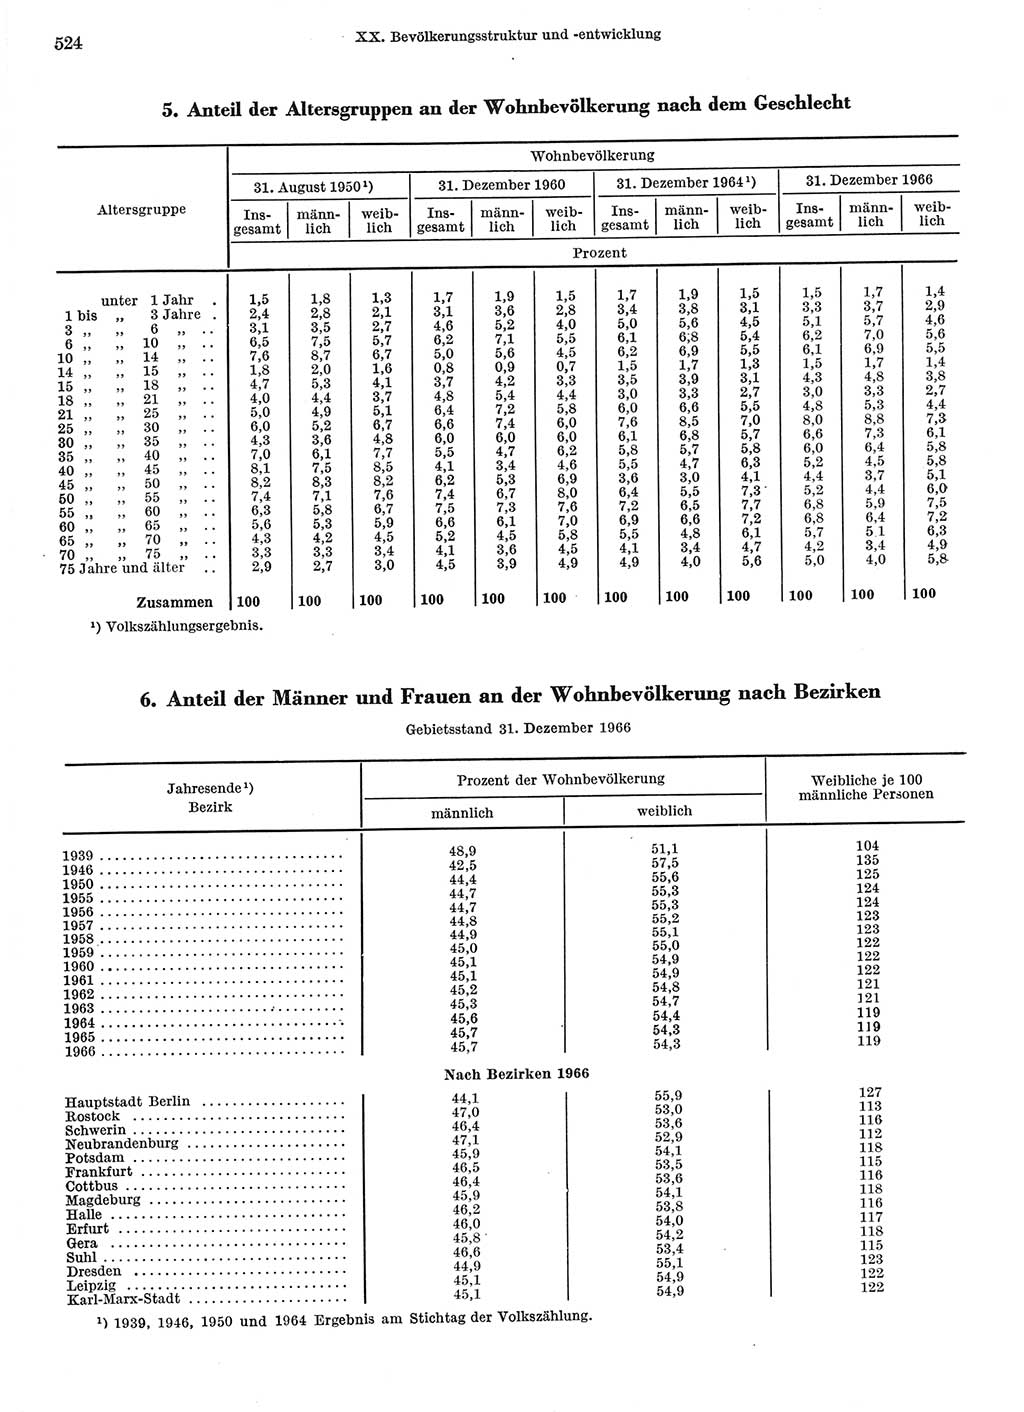 Statistisches Jahrbuch der Deutschen Demokratischen Republik (DDR) 1967, Seite 524 (Stat. Jb. DDR 1967, S. 524)